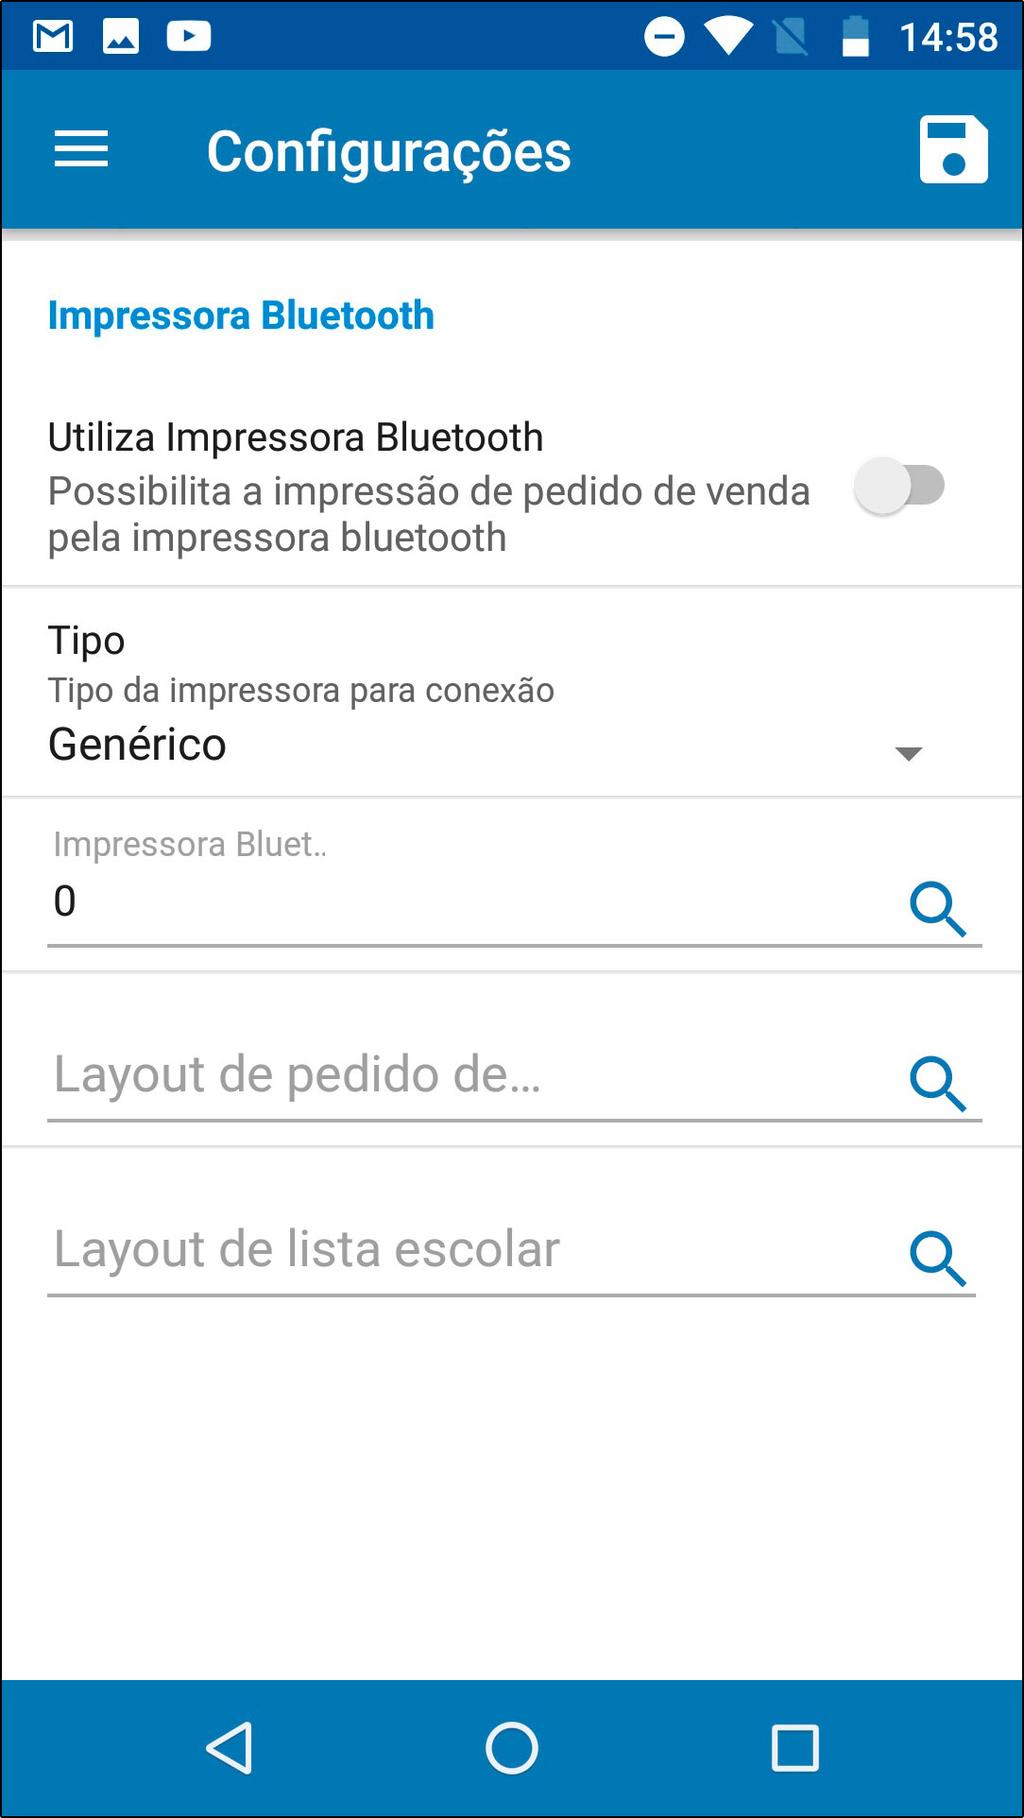 Utiliza Impressora Bluetooth: Com esta opção habilitada o aplicativo